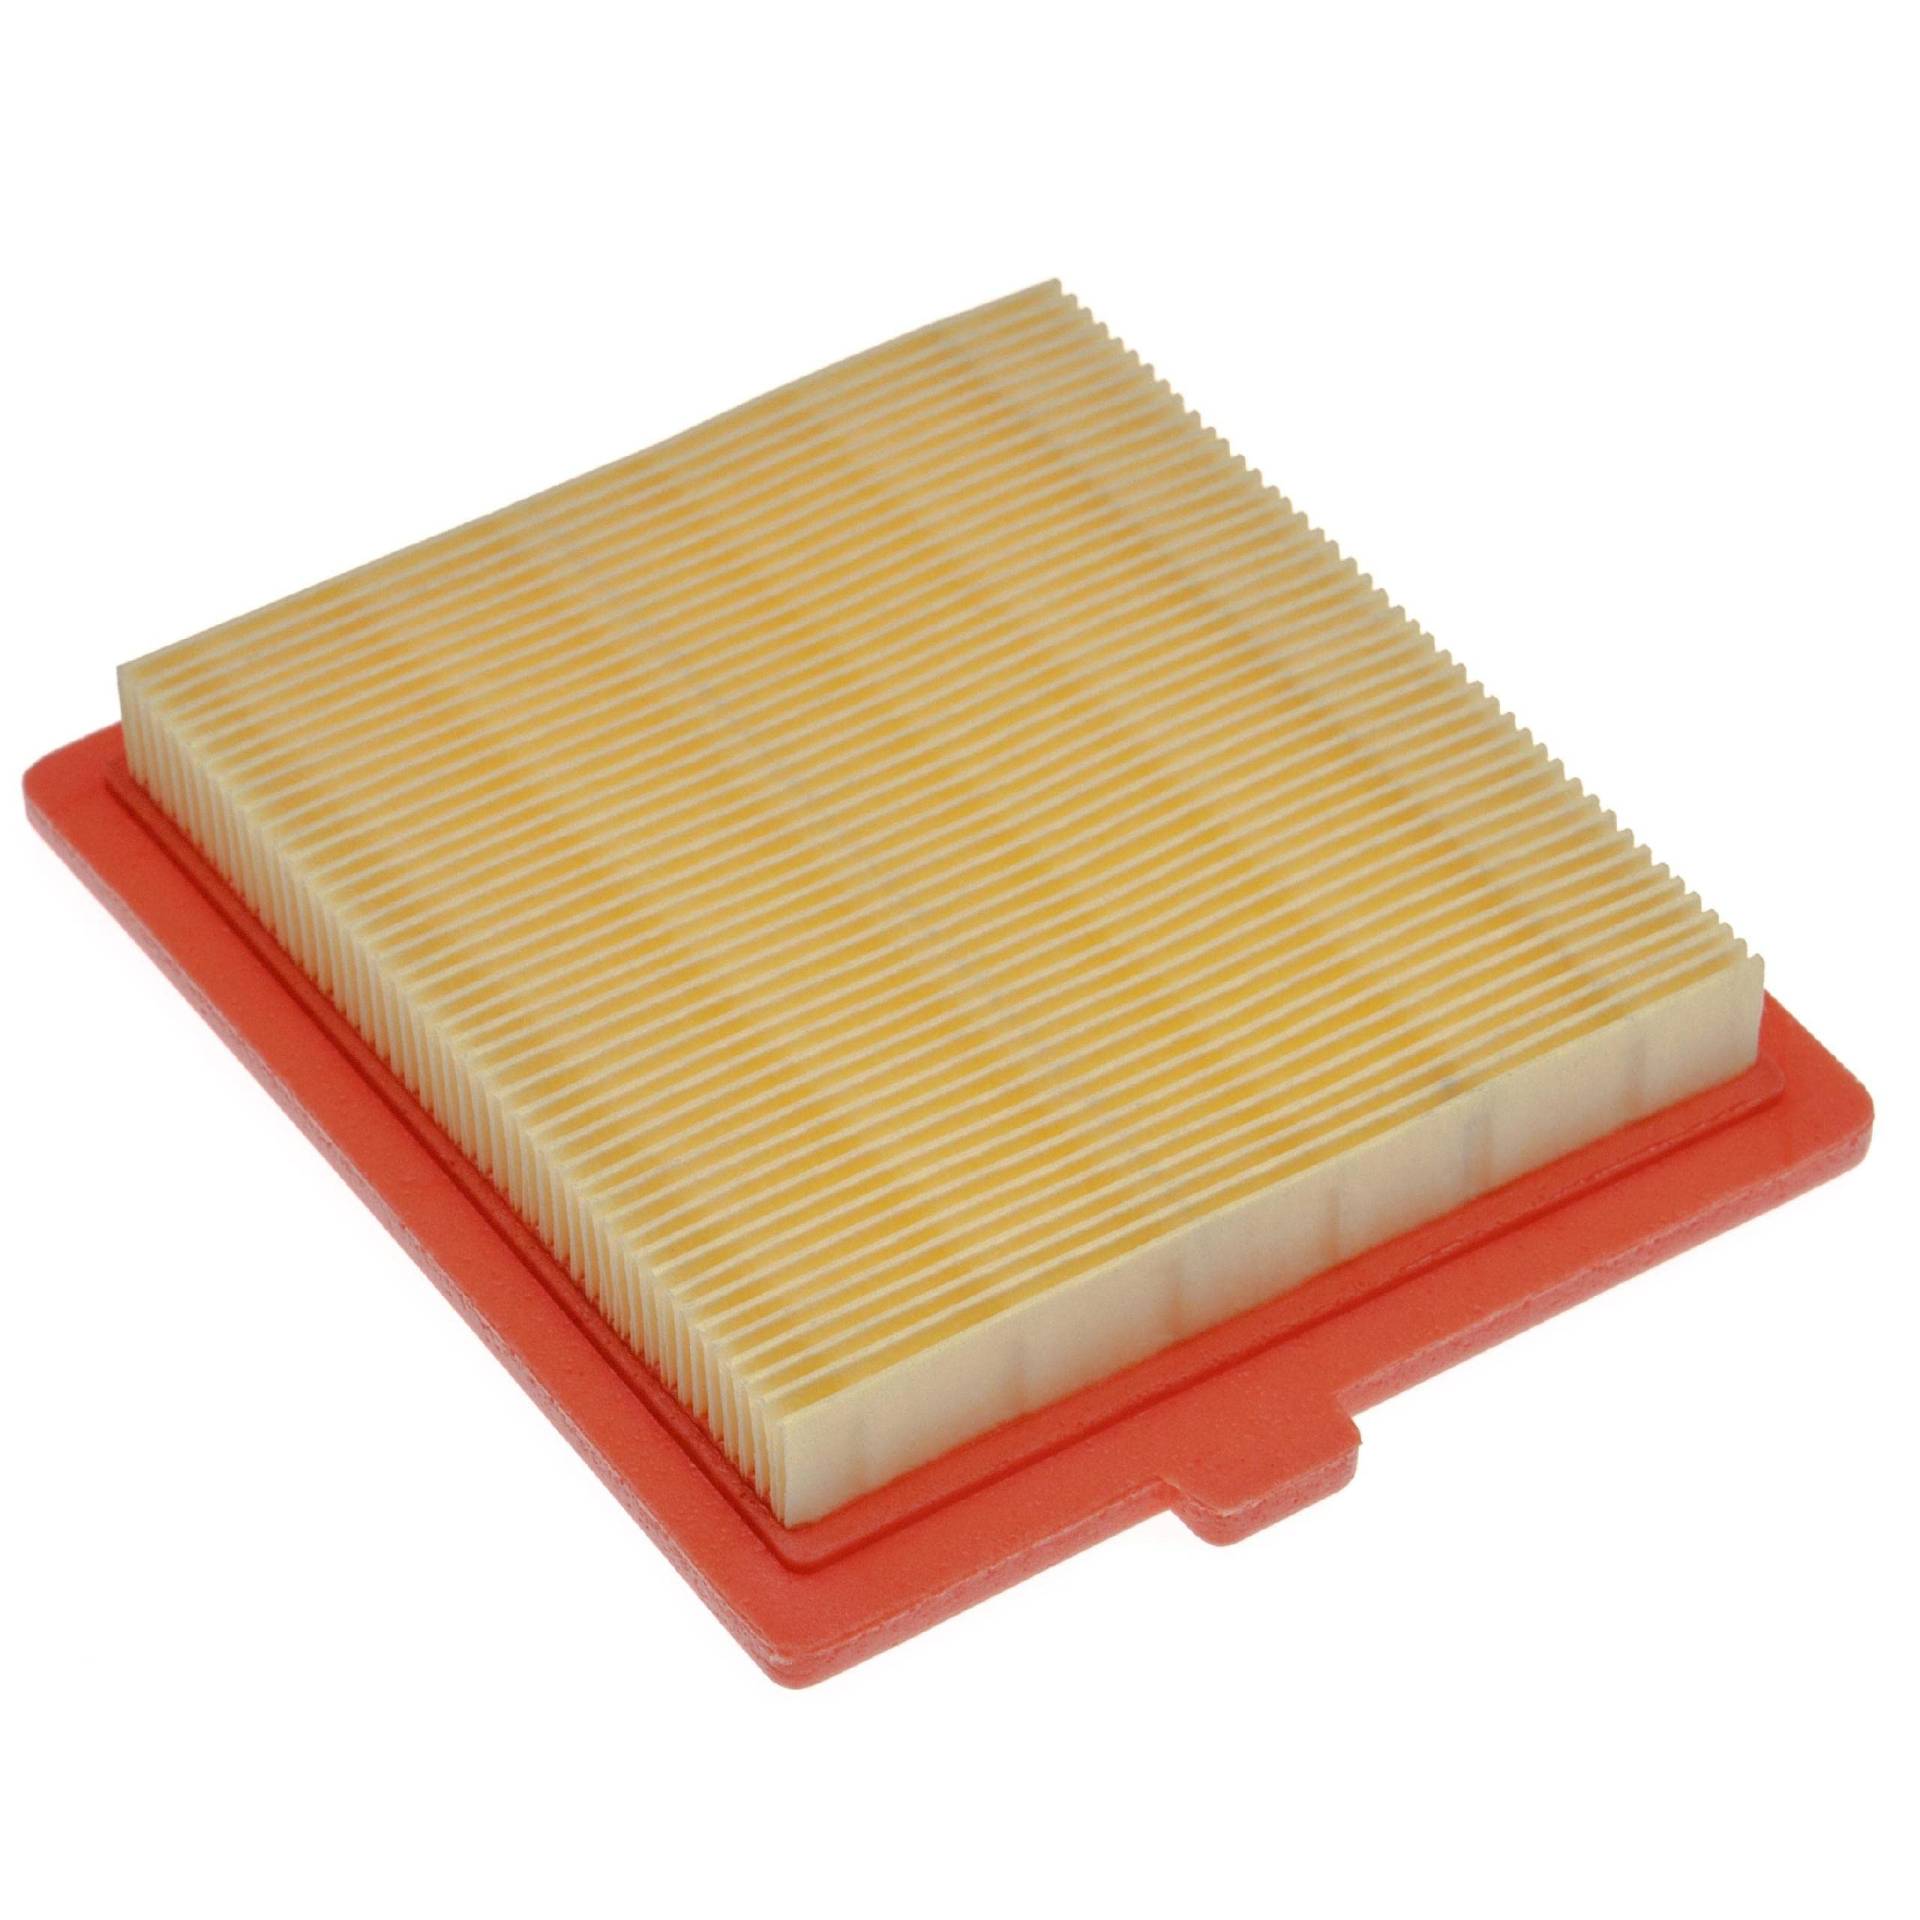 vhbw Ersatzfilter (1x Luftfilter) kompatibel mit Castelgarden/GGP/STIGA SV40 Rasenmäher, 12,2 x 10,8 x 2 cm, Gelb, Orange von vhbw